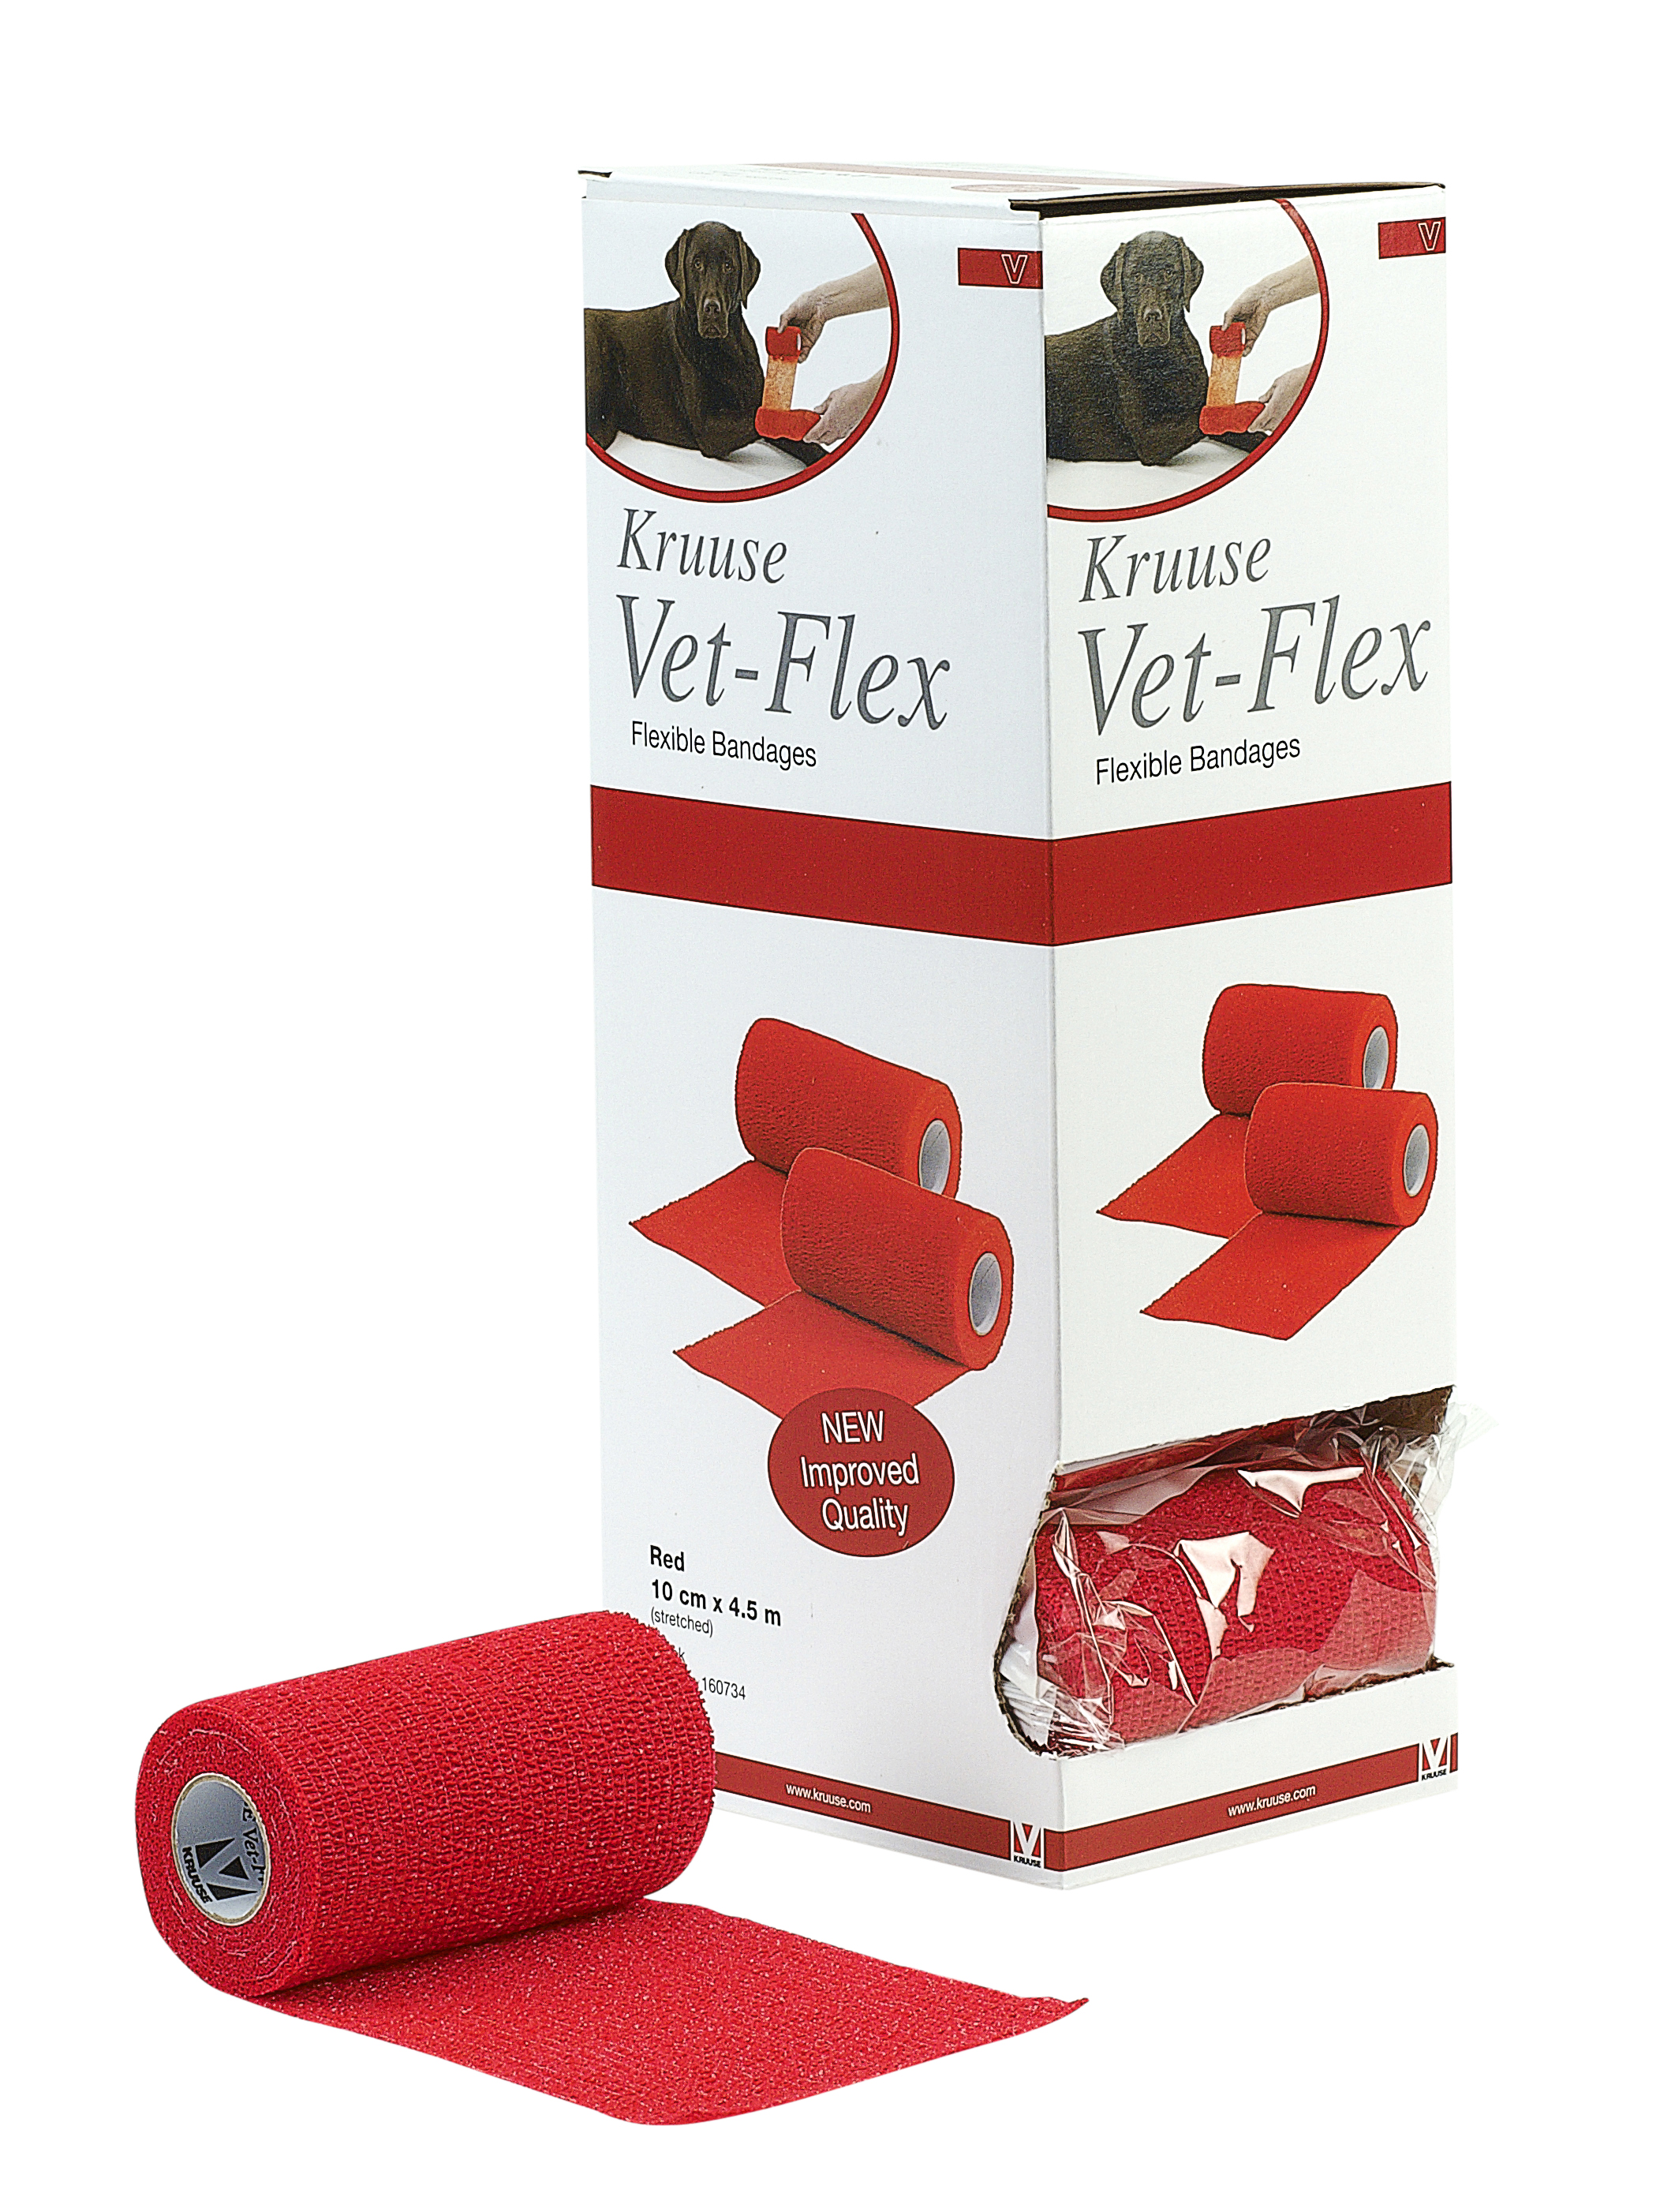 Vet-Flex 10 cm x 4.5 m, κόκκινο